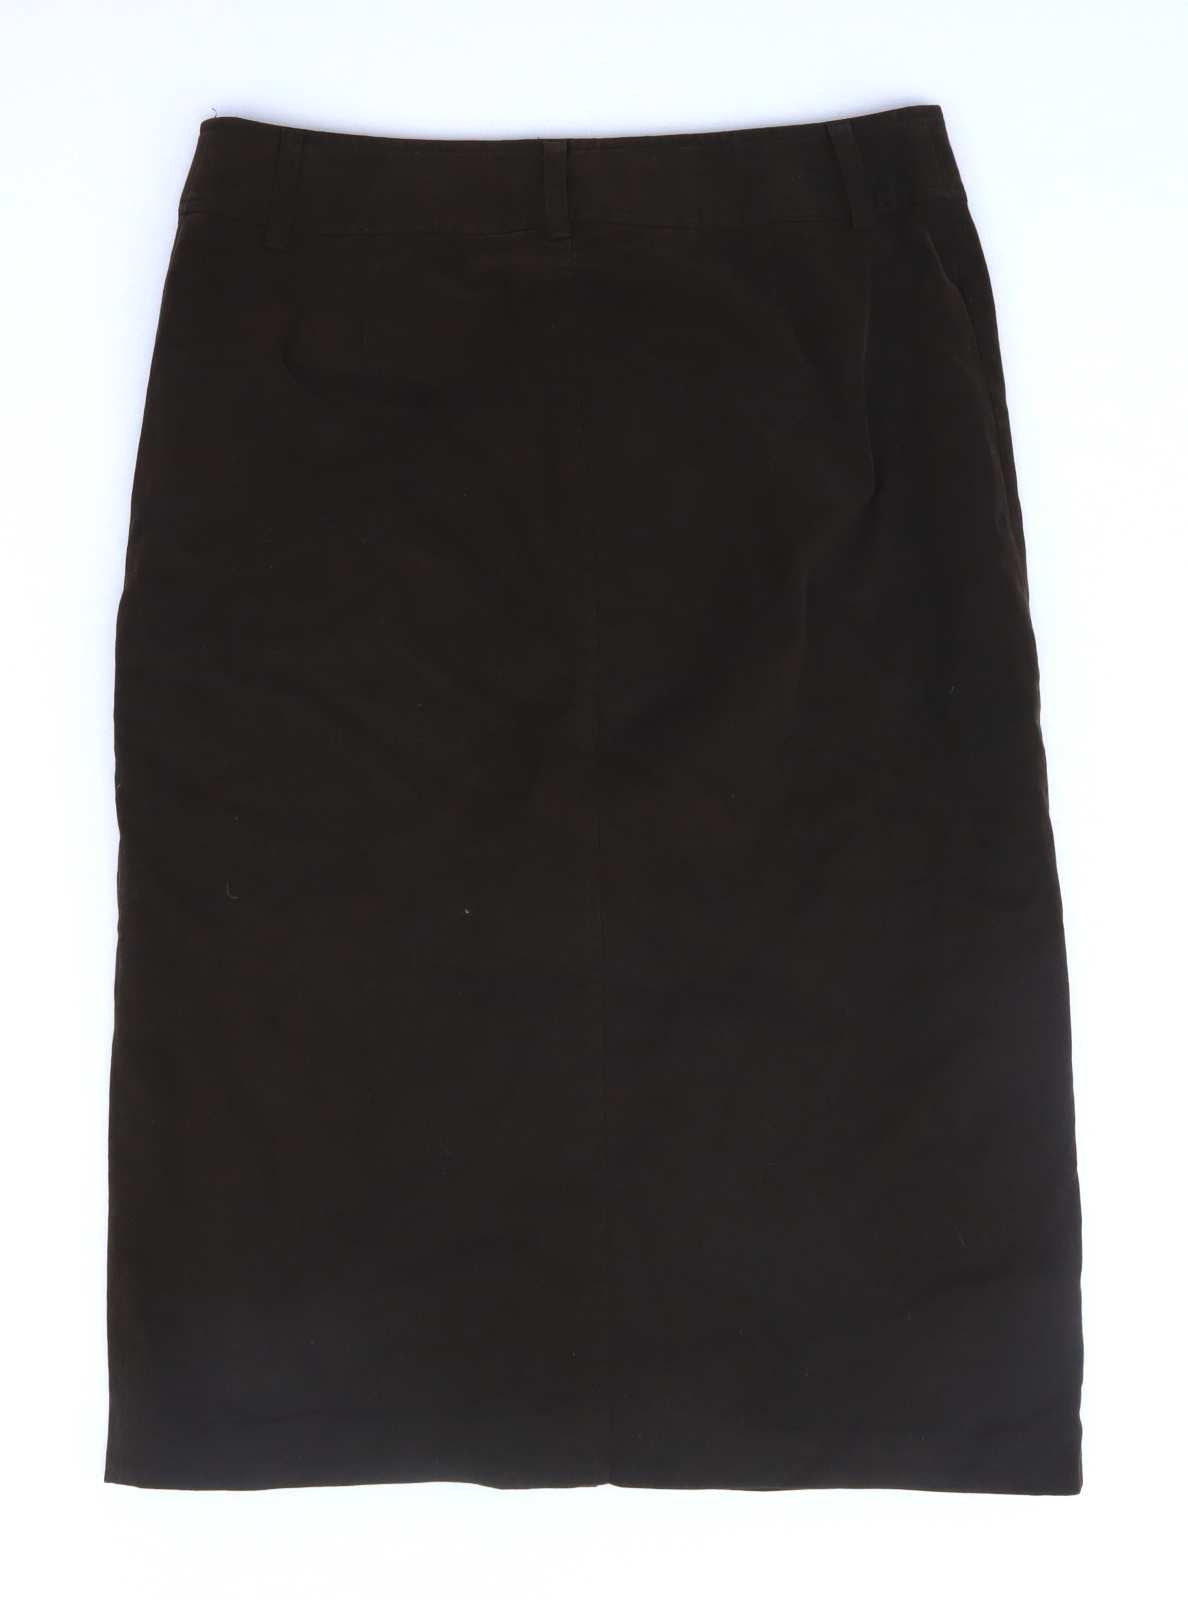 Artigiano Womens Size W29 Cotton Blend Brown Pencil Skirt (Regular)